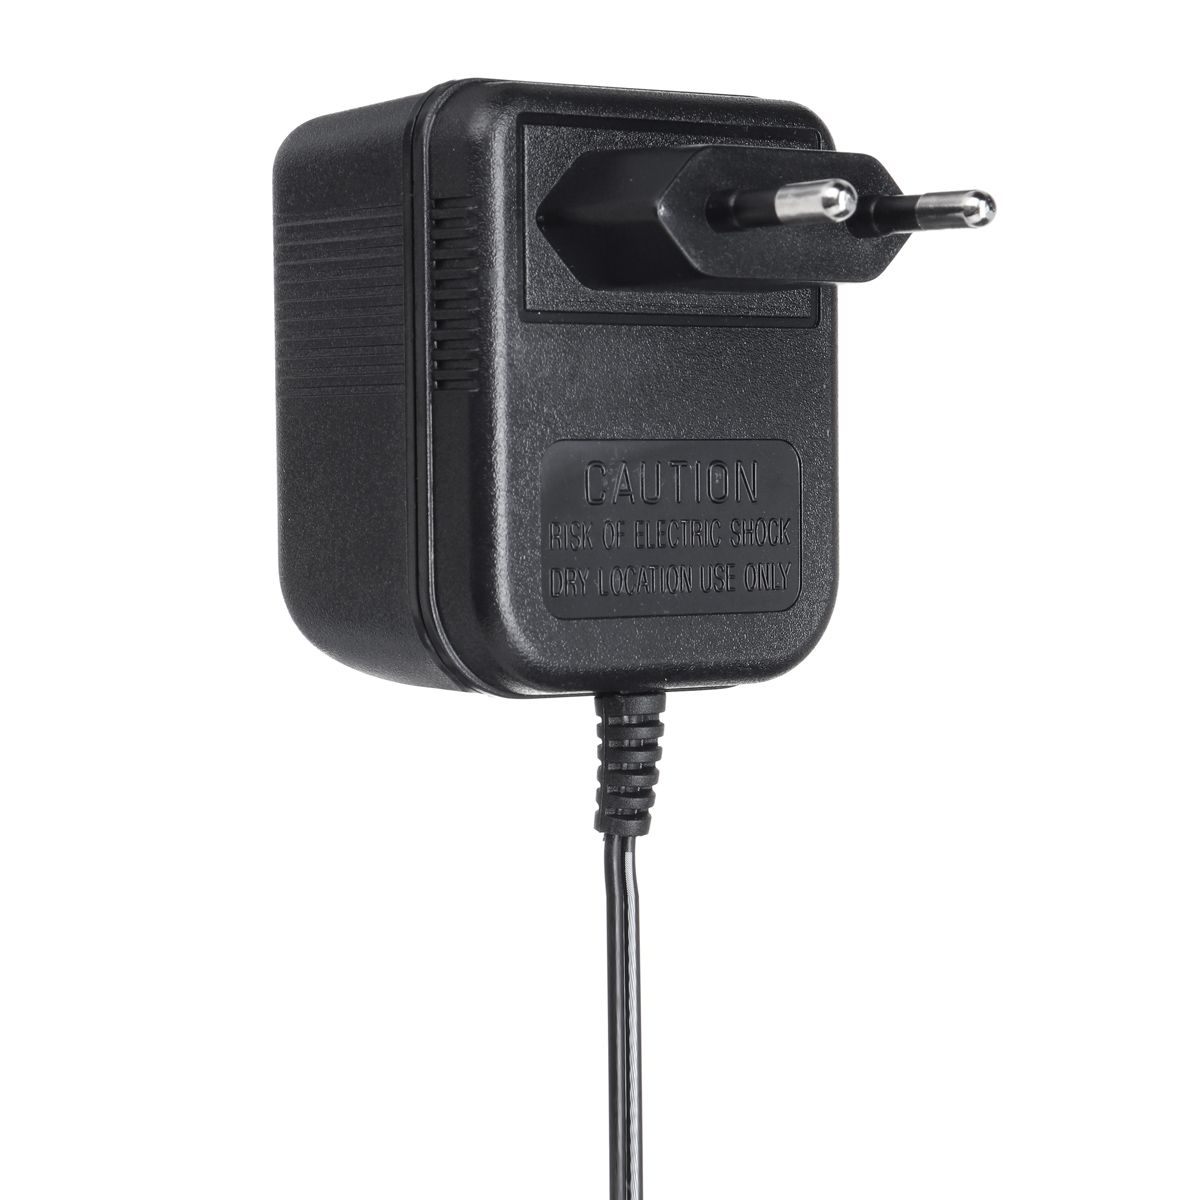 AC220V-Power-Supply-Adapter-for-Video-Ring-Doorbell-EU-Plug-1390783